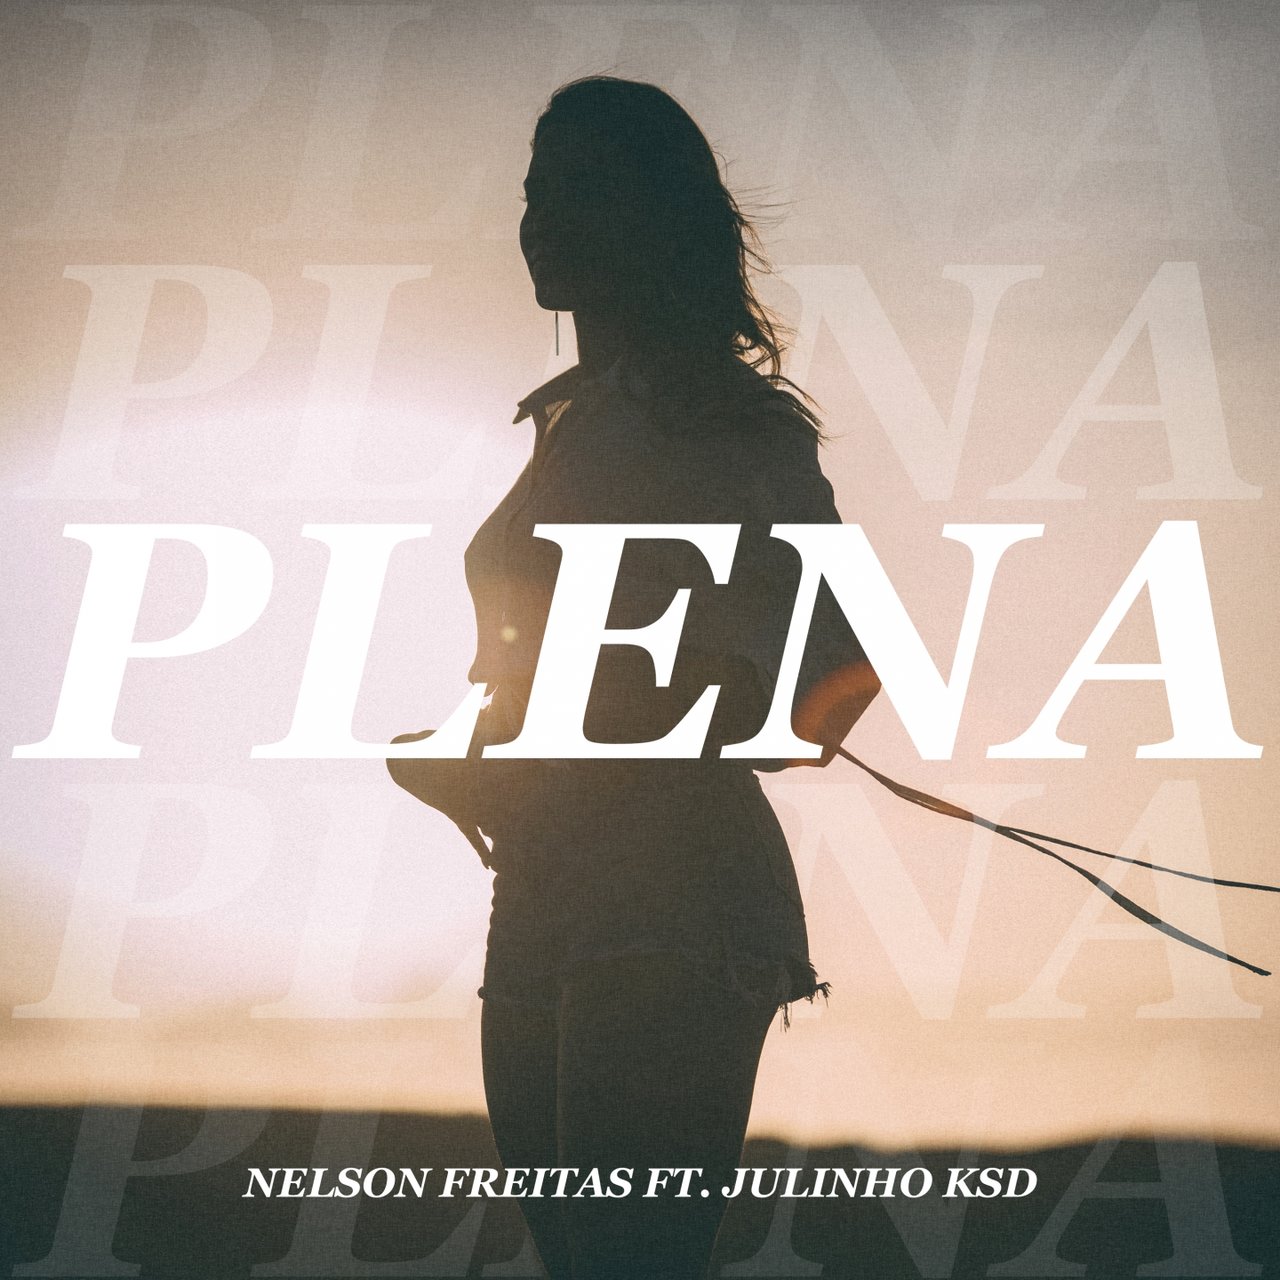 Nelson Freitas - Plena (ft. Julinho KSD) (Cover)